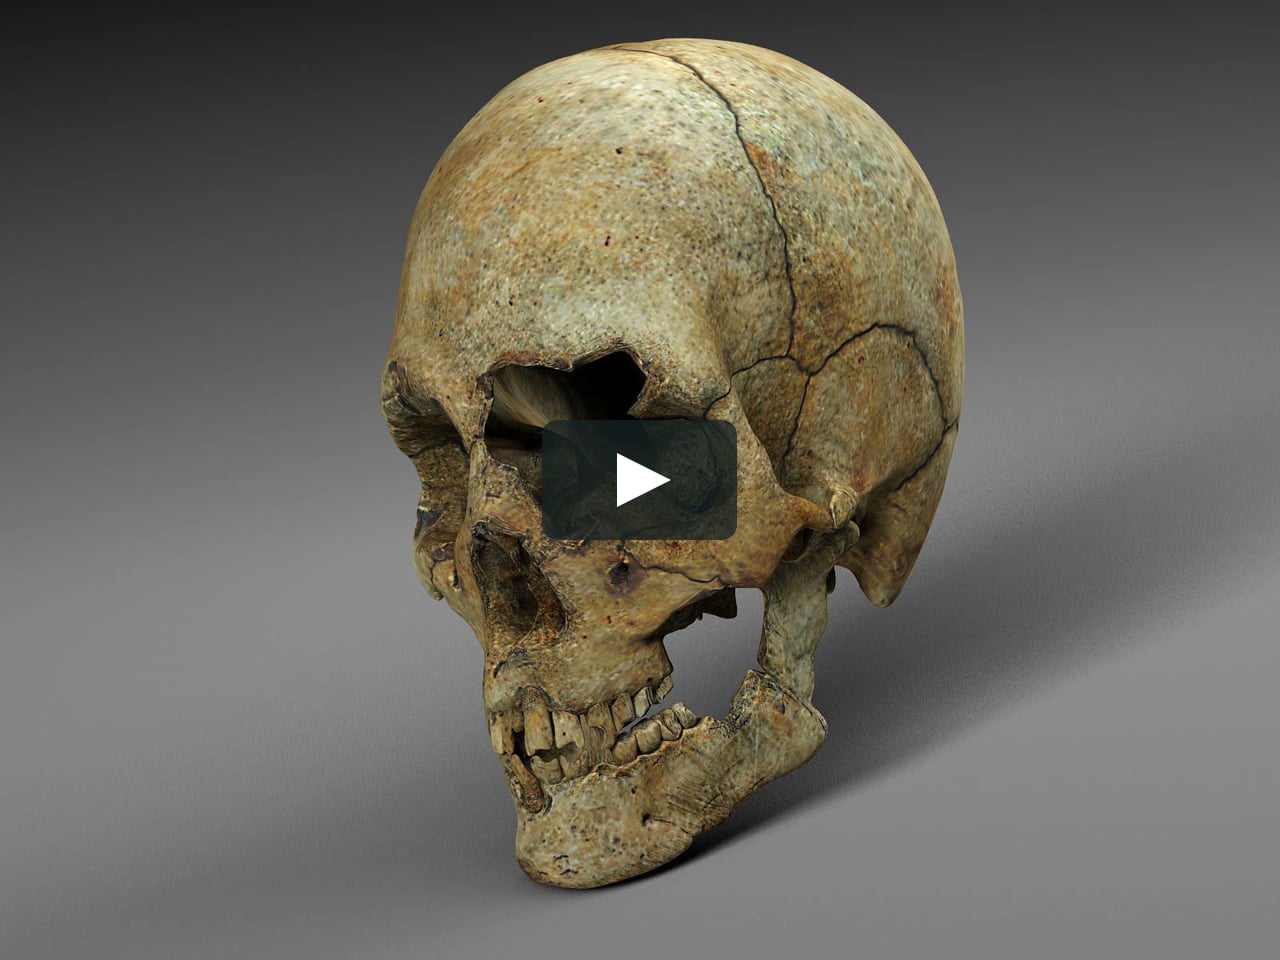 Old bone. Ископаемый череп человека.